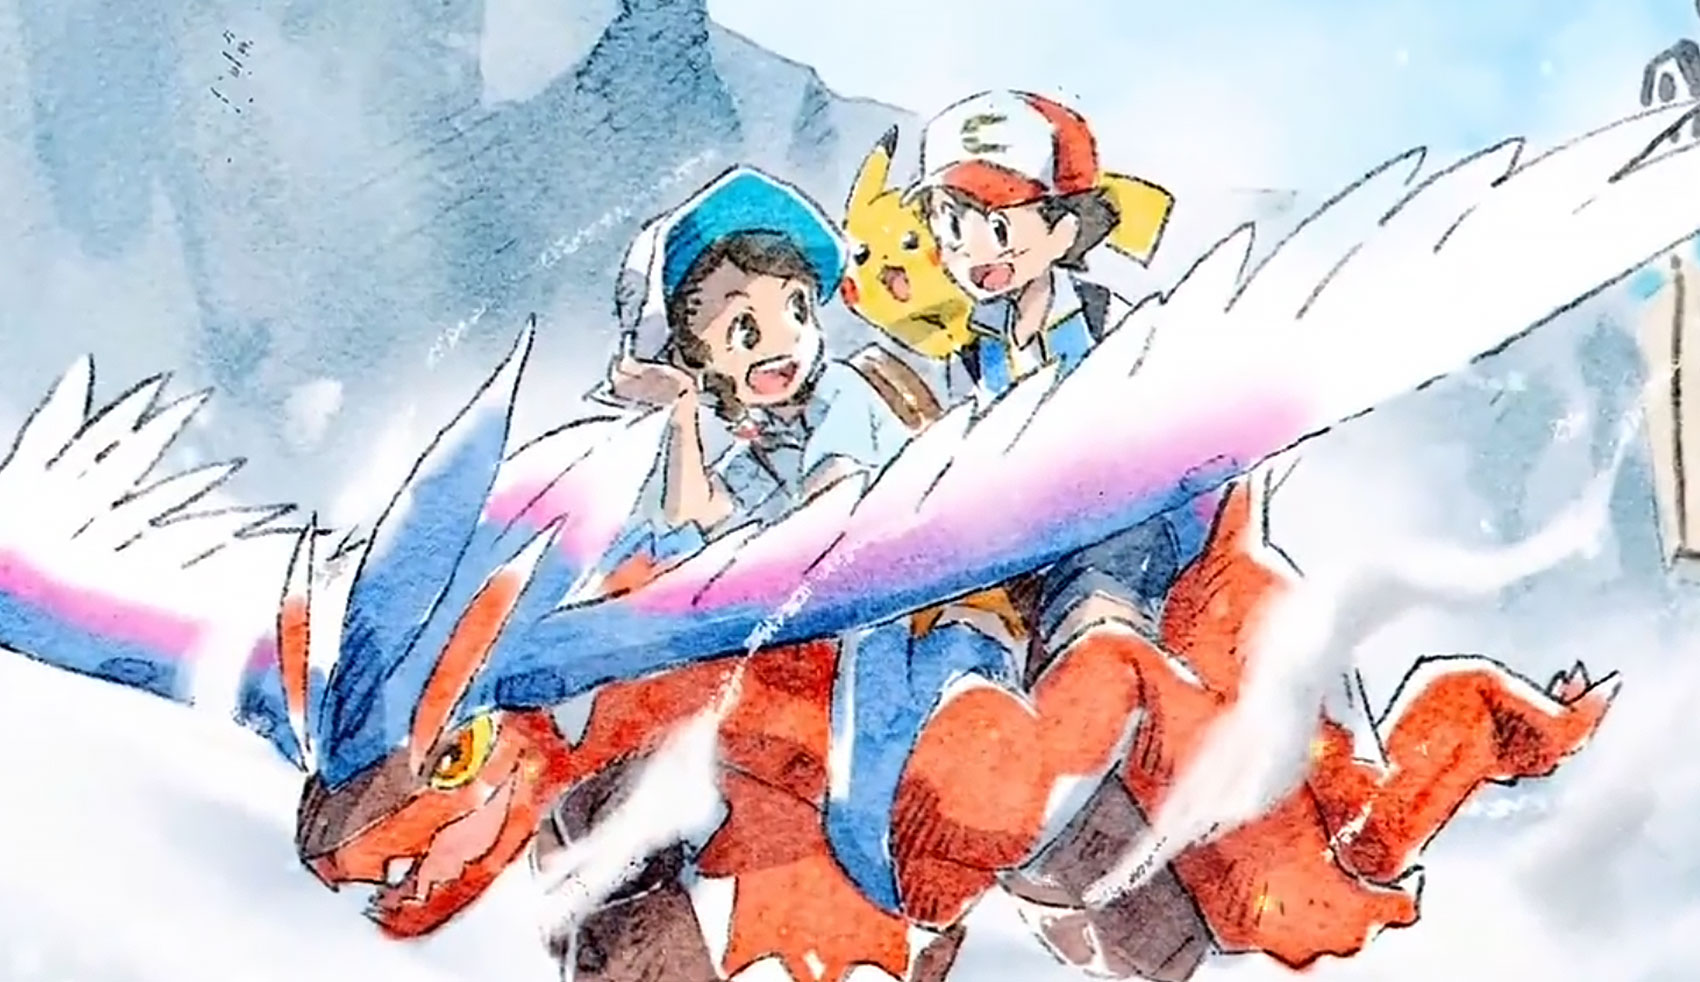 Nova temporada de Pokémon será a última com Ash e Pikachu